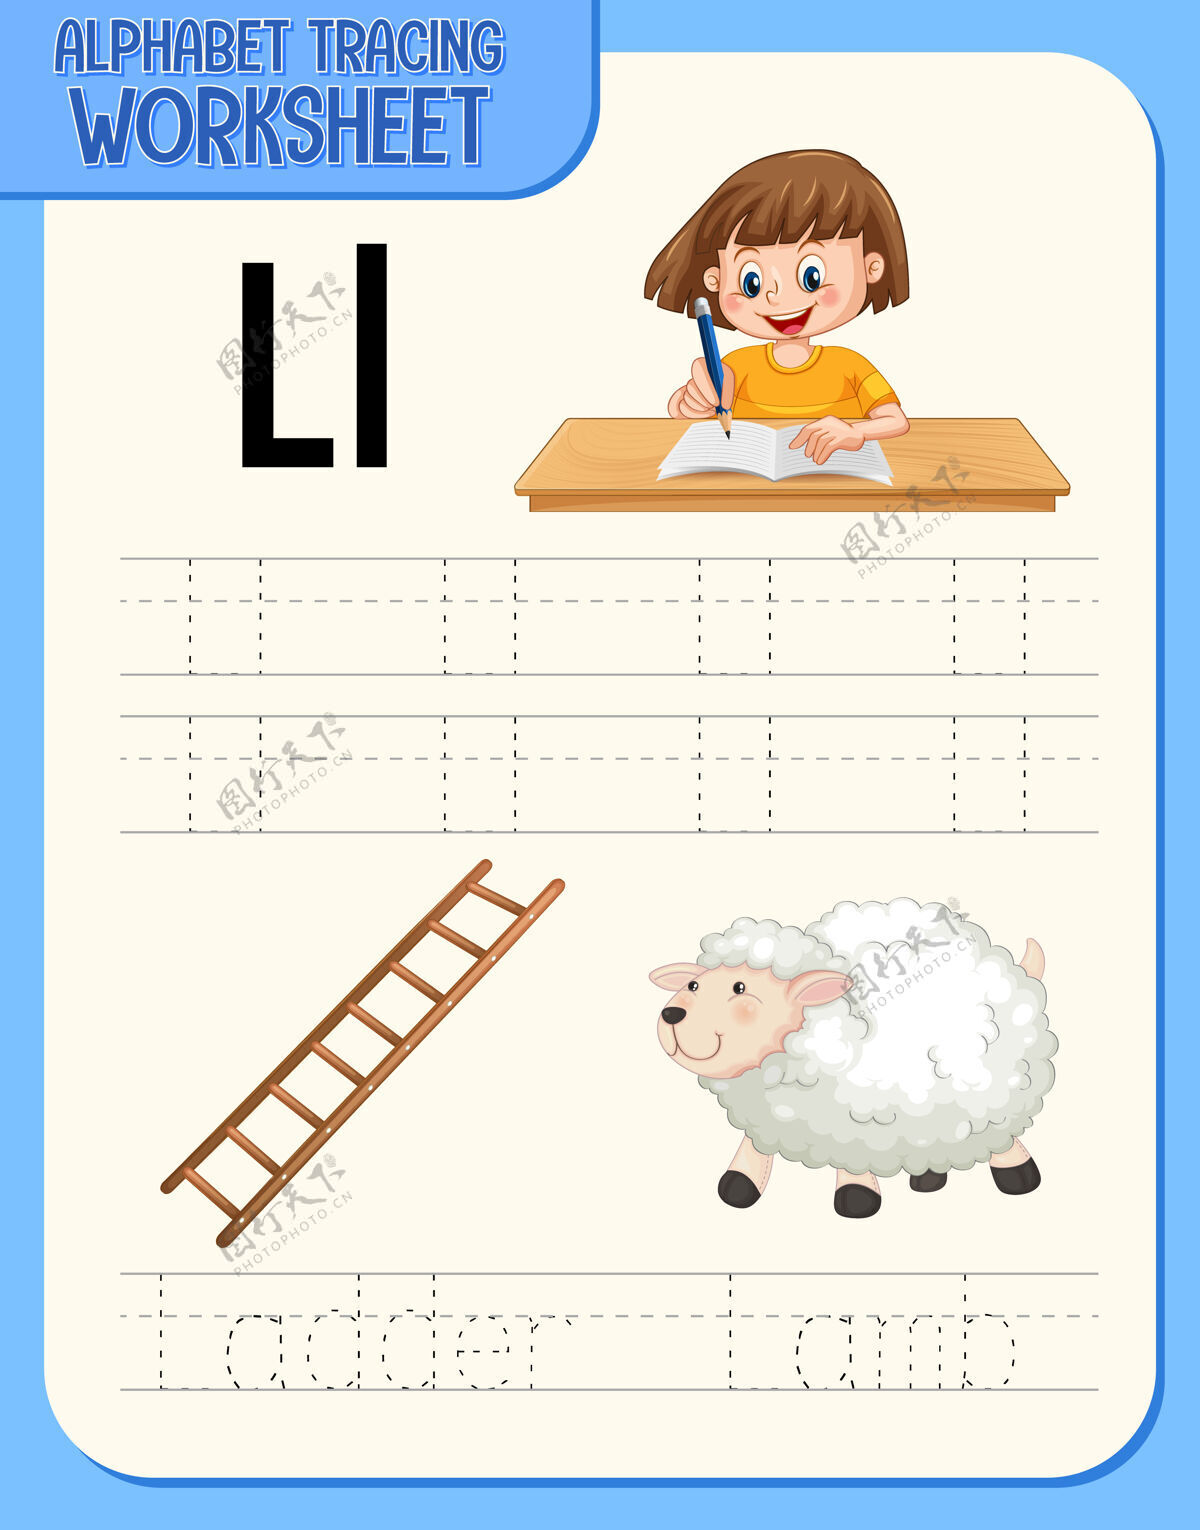 学习字母表跟踪与字母和词汇工作表学习羊字体